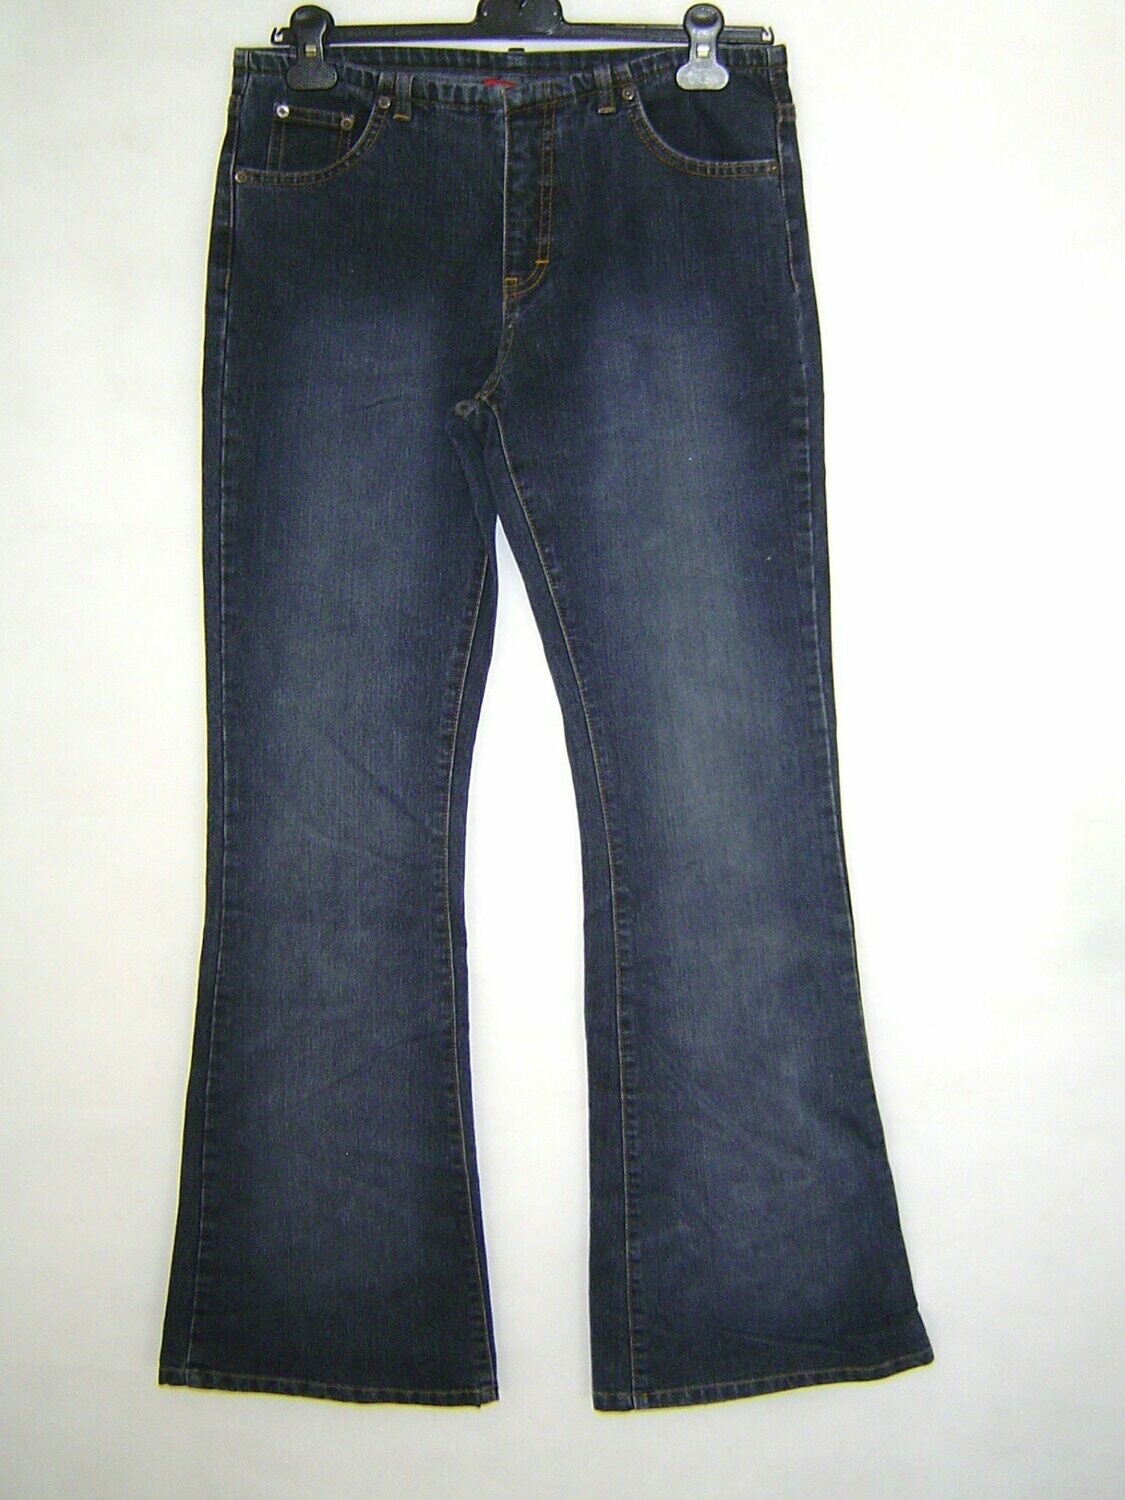 JST Damen Jeans Hose Gr. 36 blau mit Schlag ohne Bund Hüfthose 85cm  Innenbeinlänge